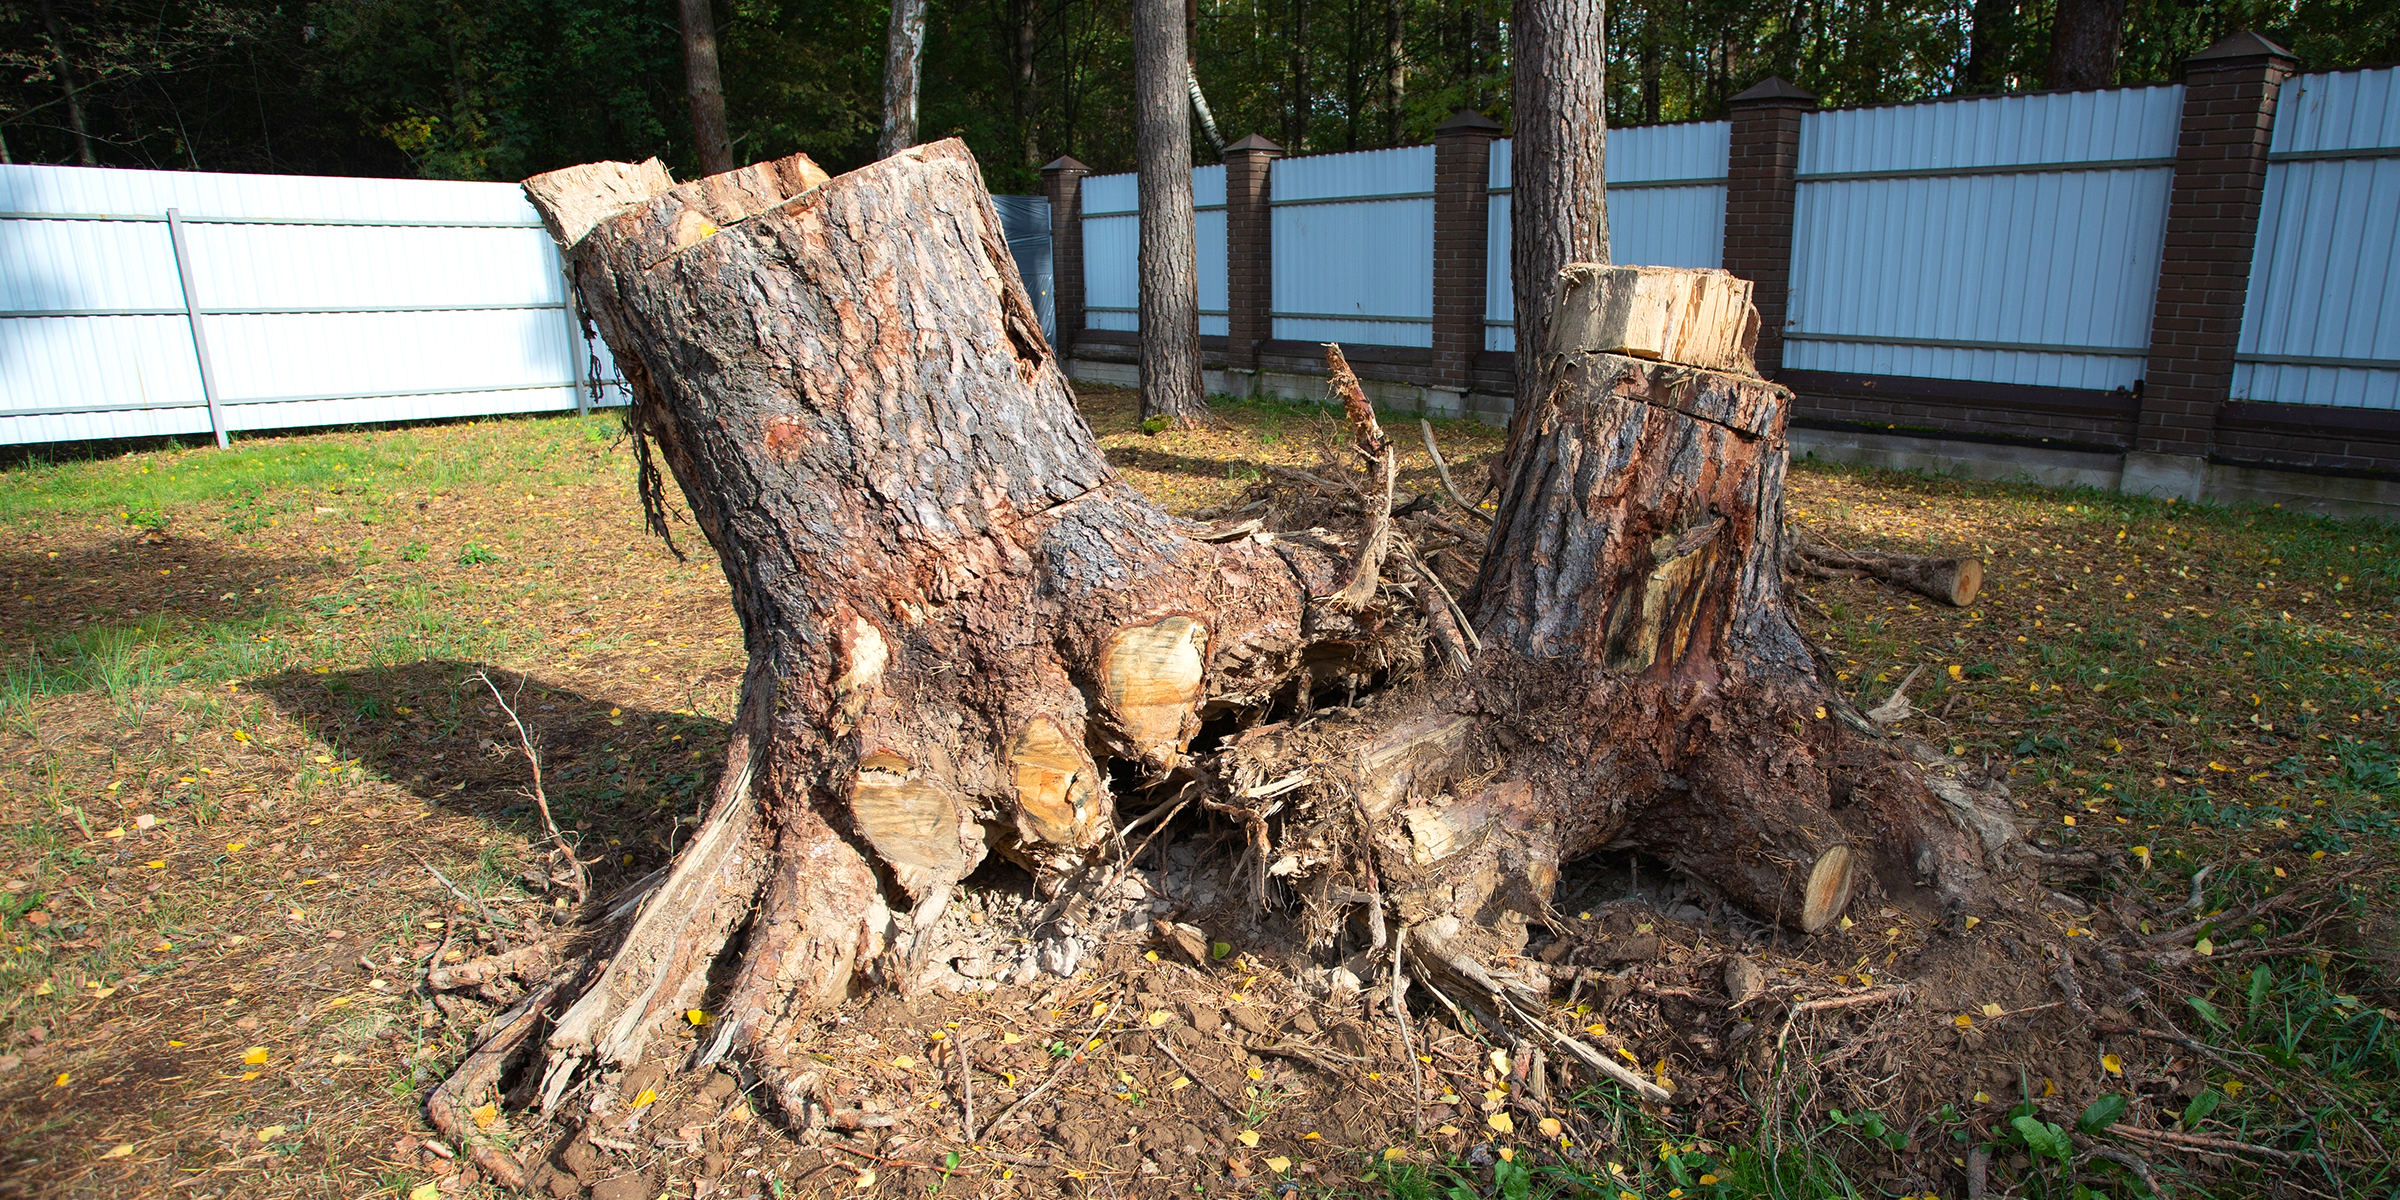 Tree stumps in a garden | Source: Shutterstock